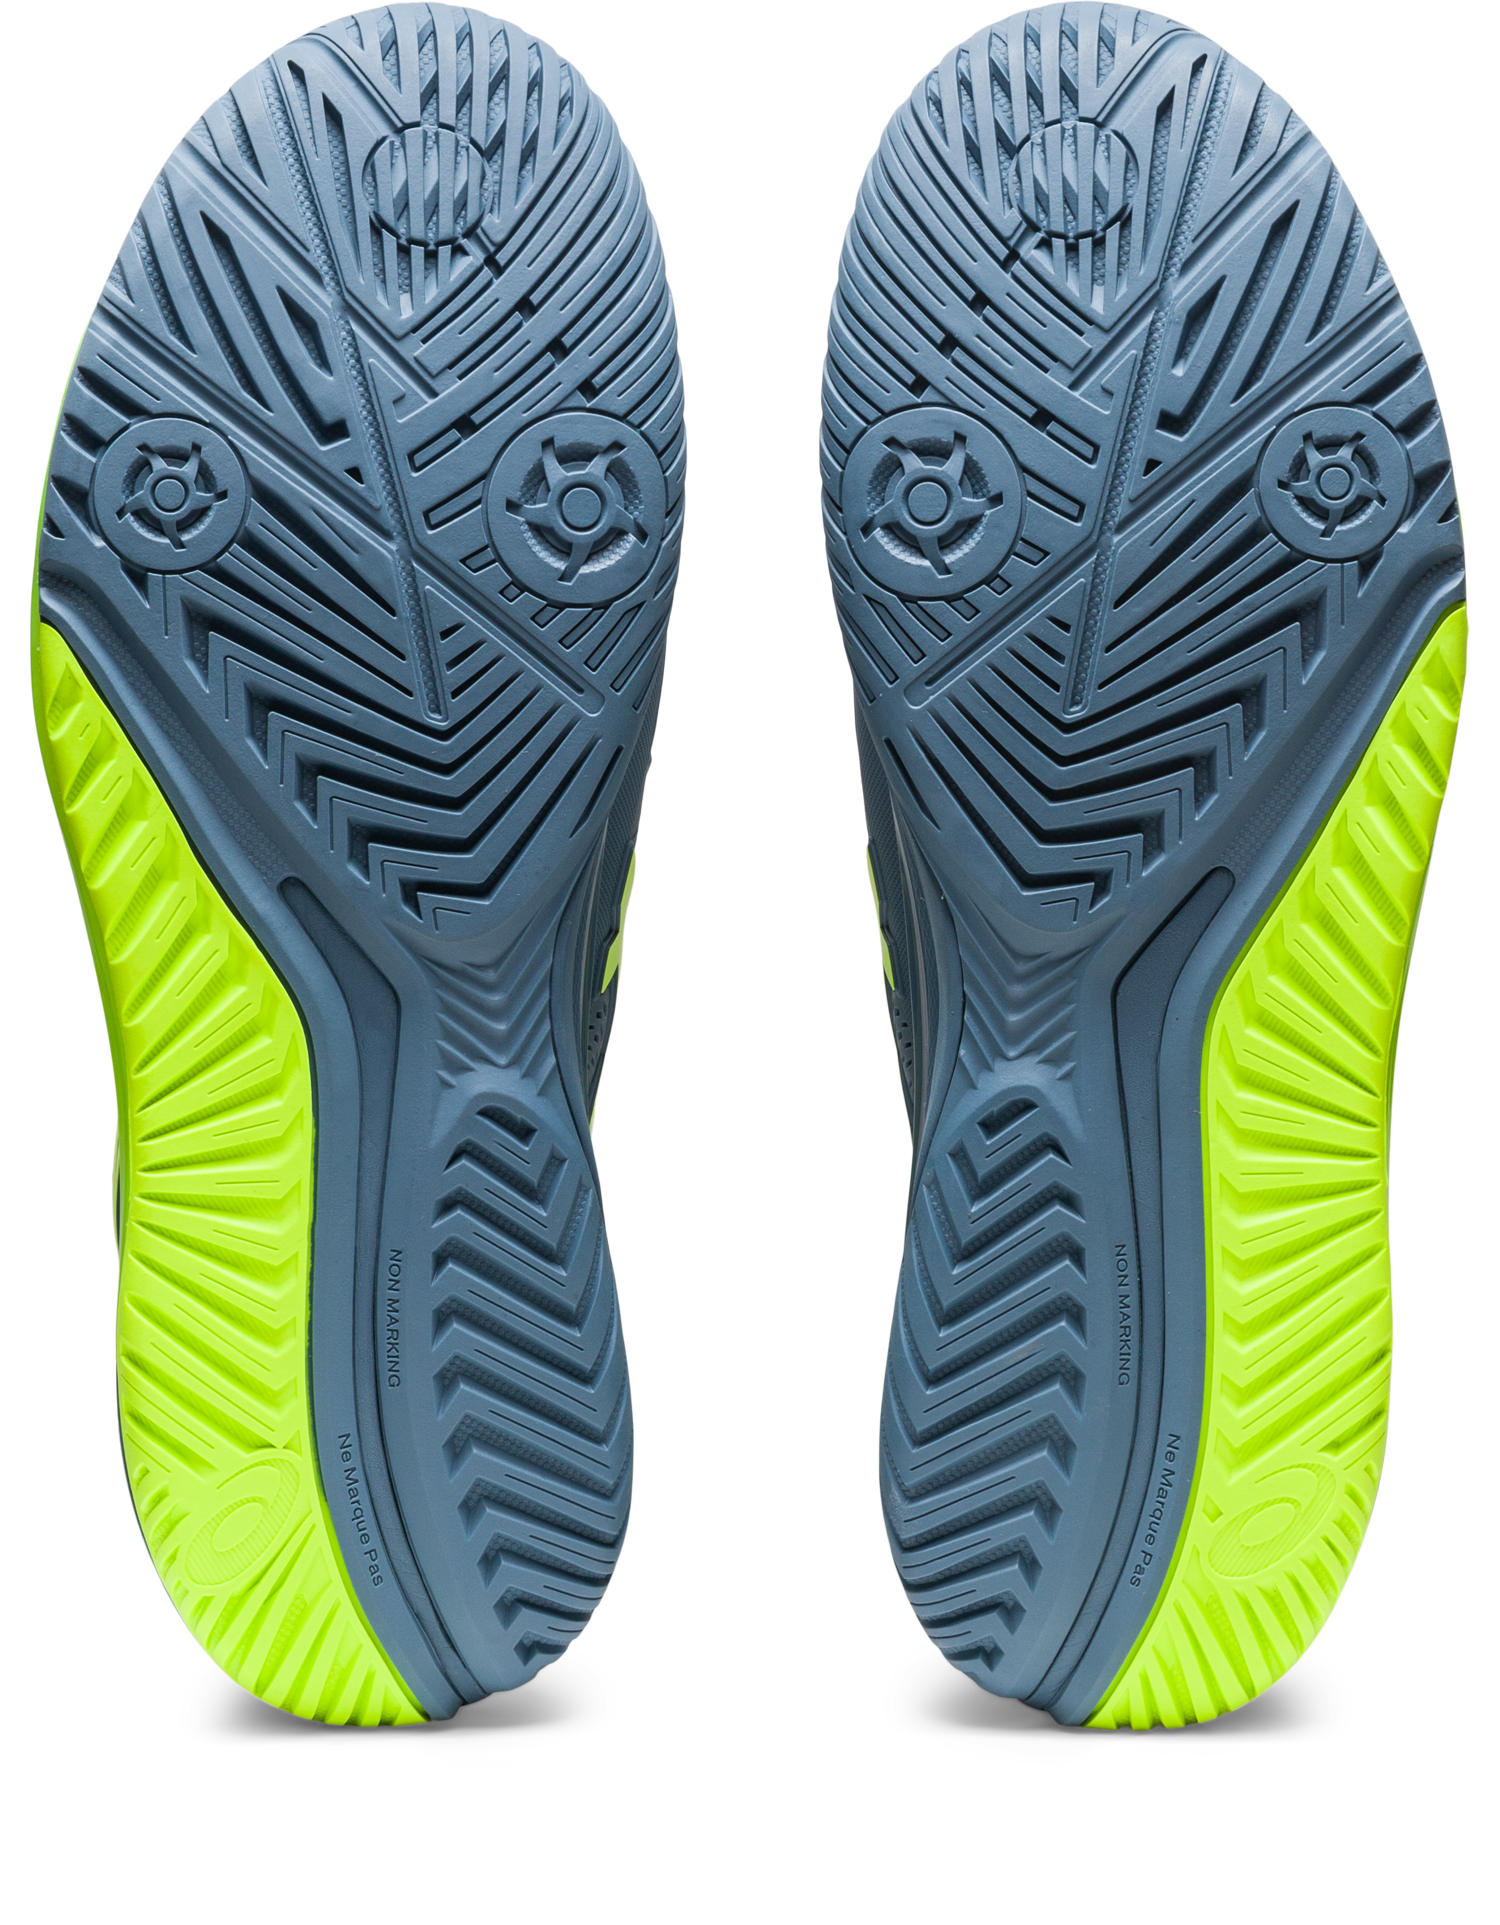 Asics Men's Gel-Resolution 9 Wide (2E) Tennis Shoes In Steel Blue/Hazard Green